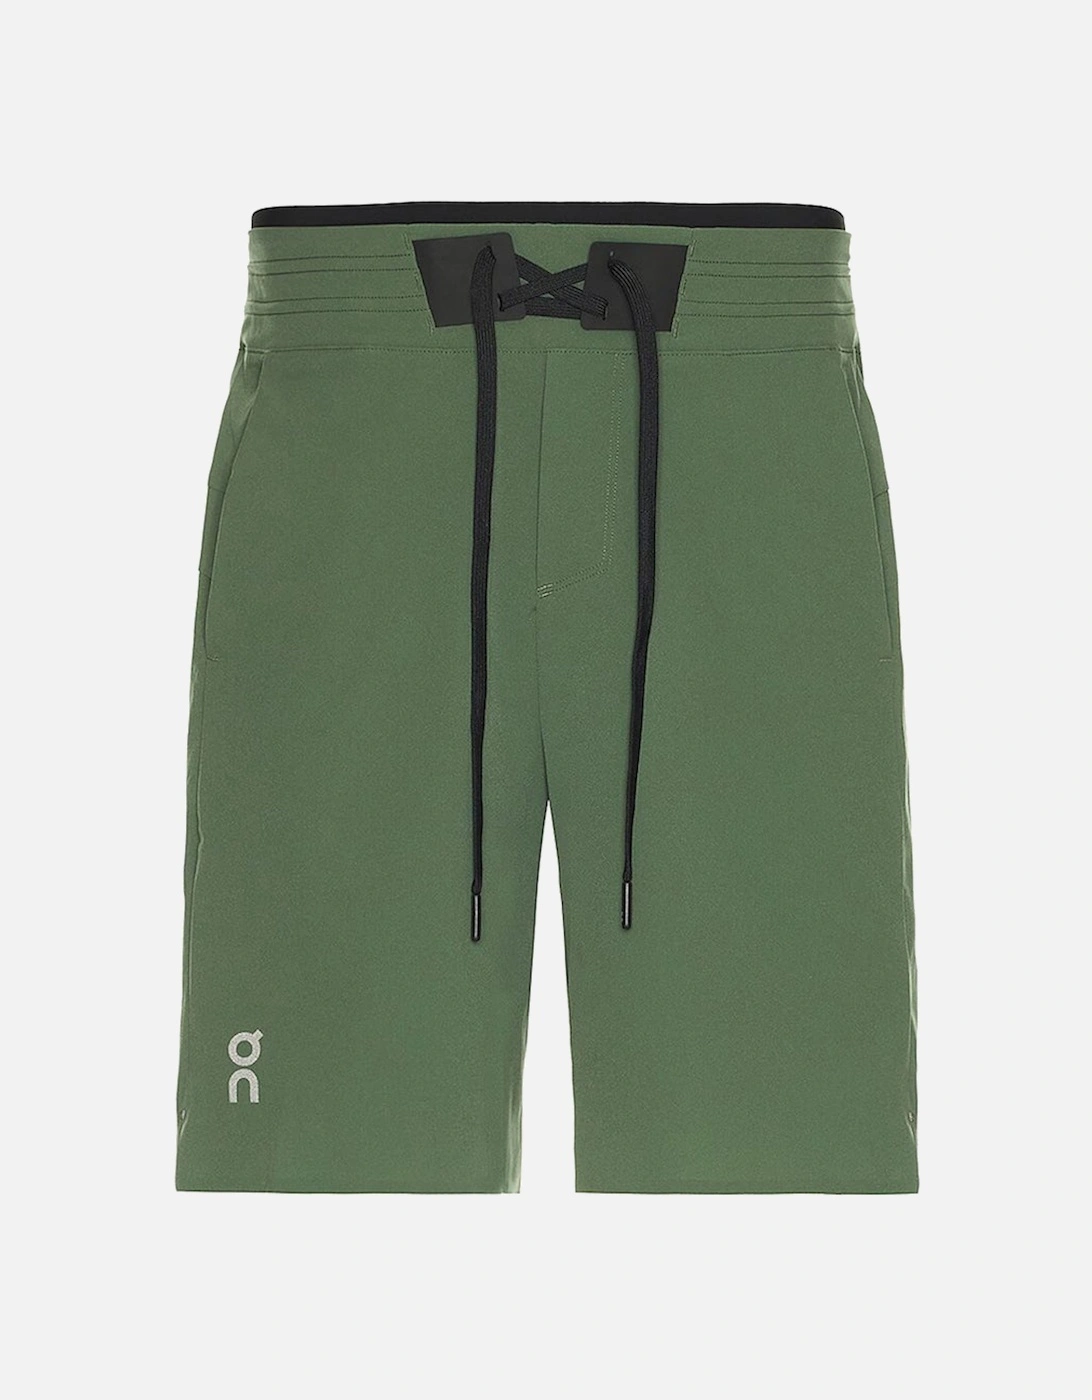 Running Mens Hybrid Shorts Green, 4 of 3